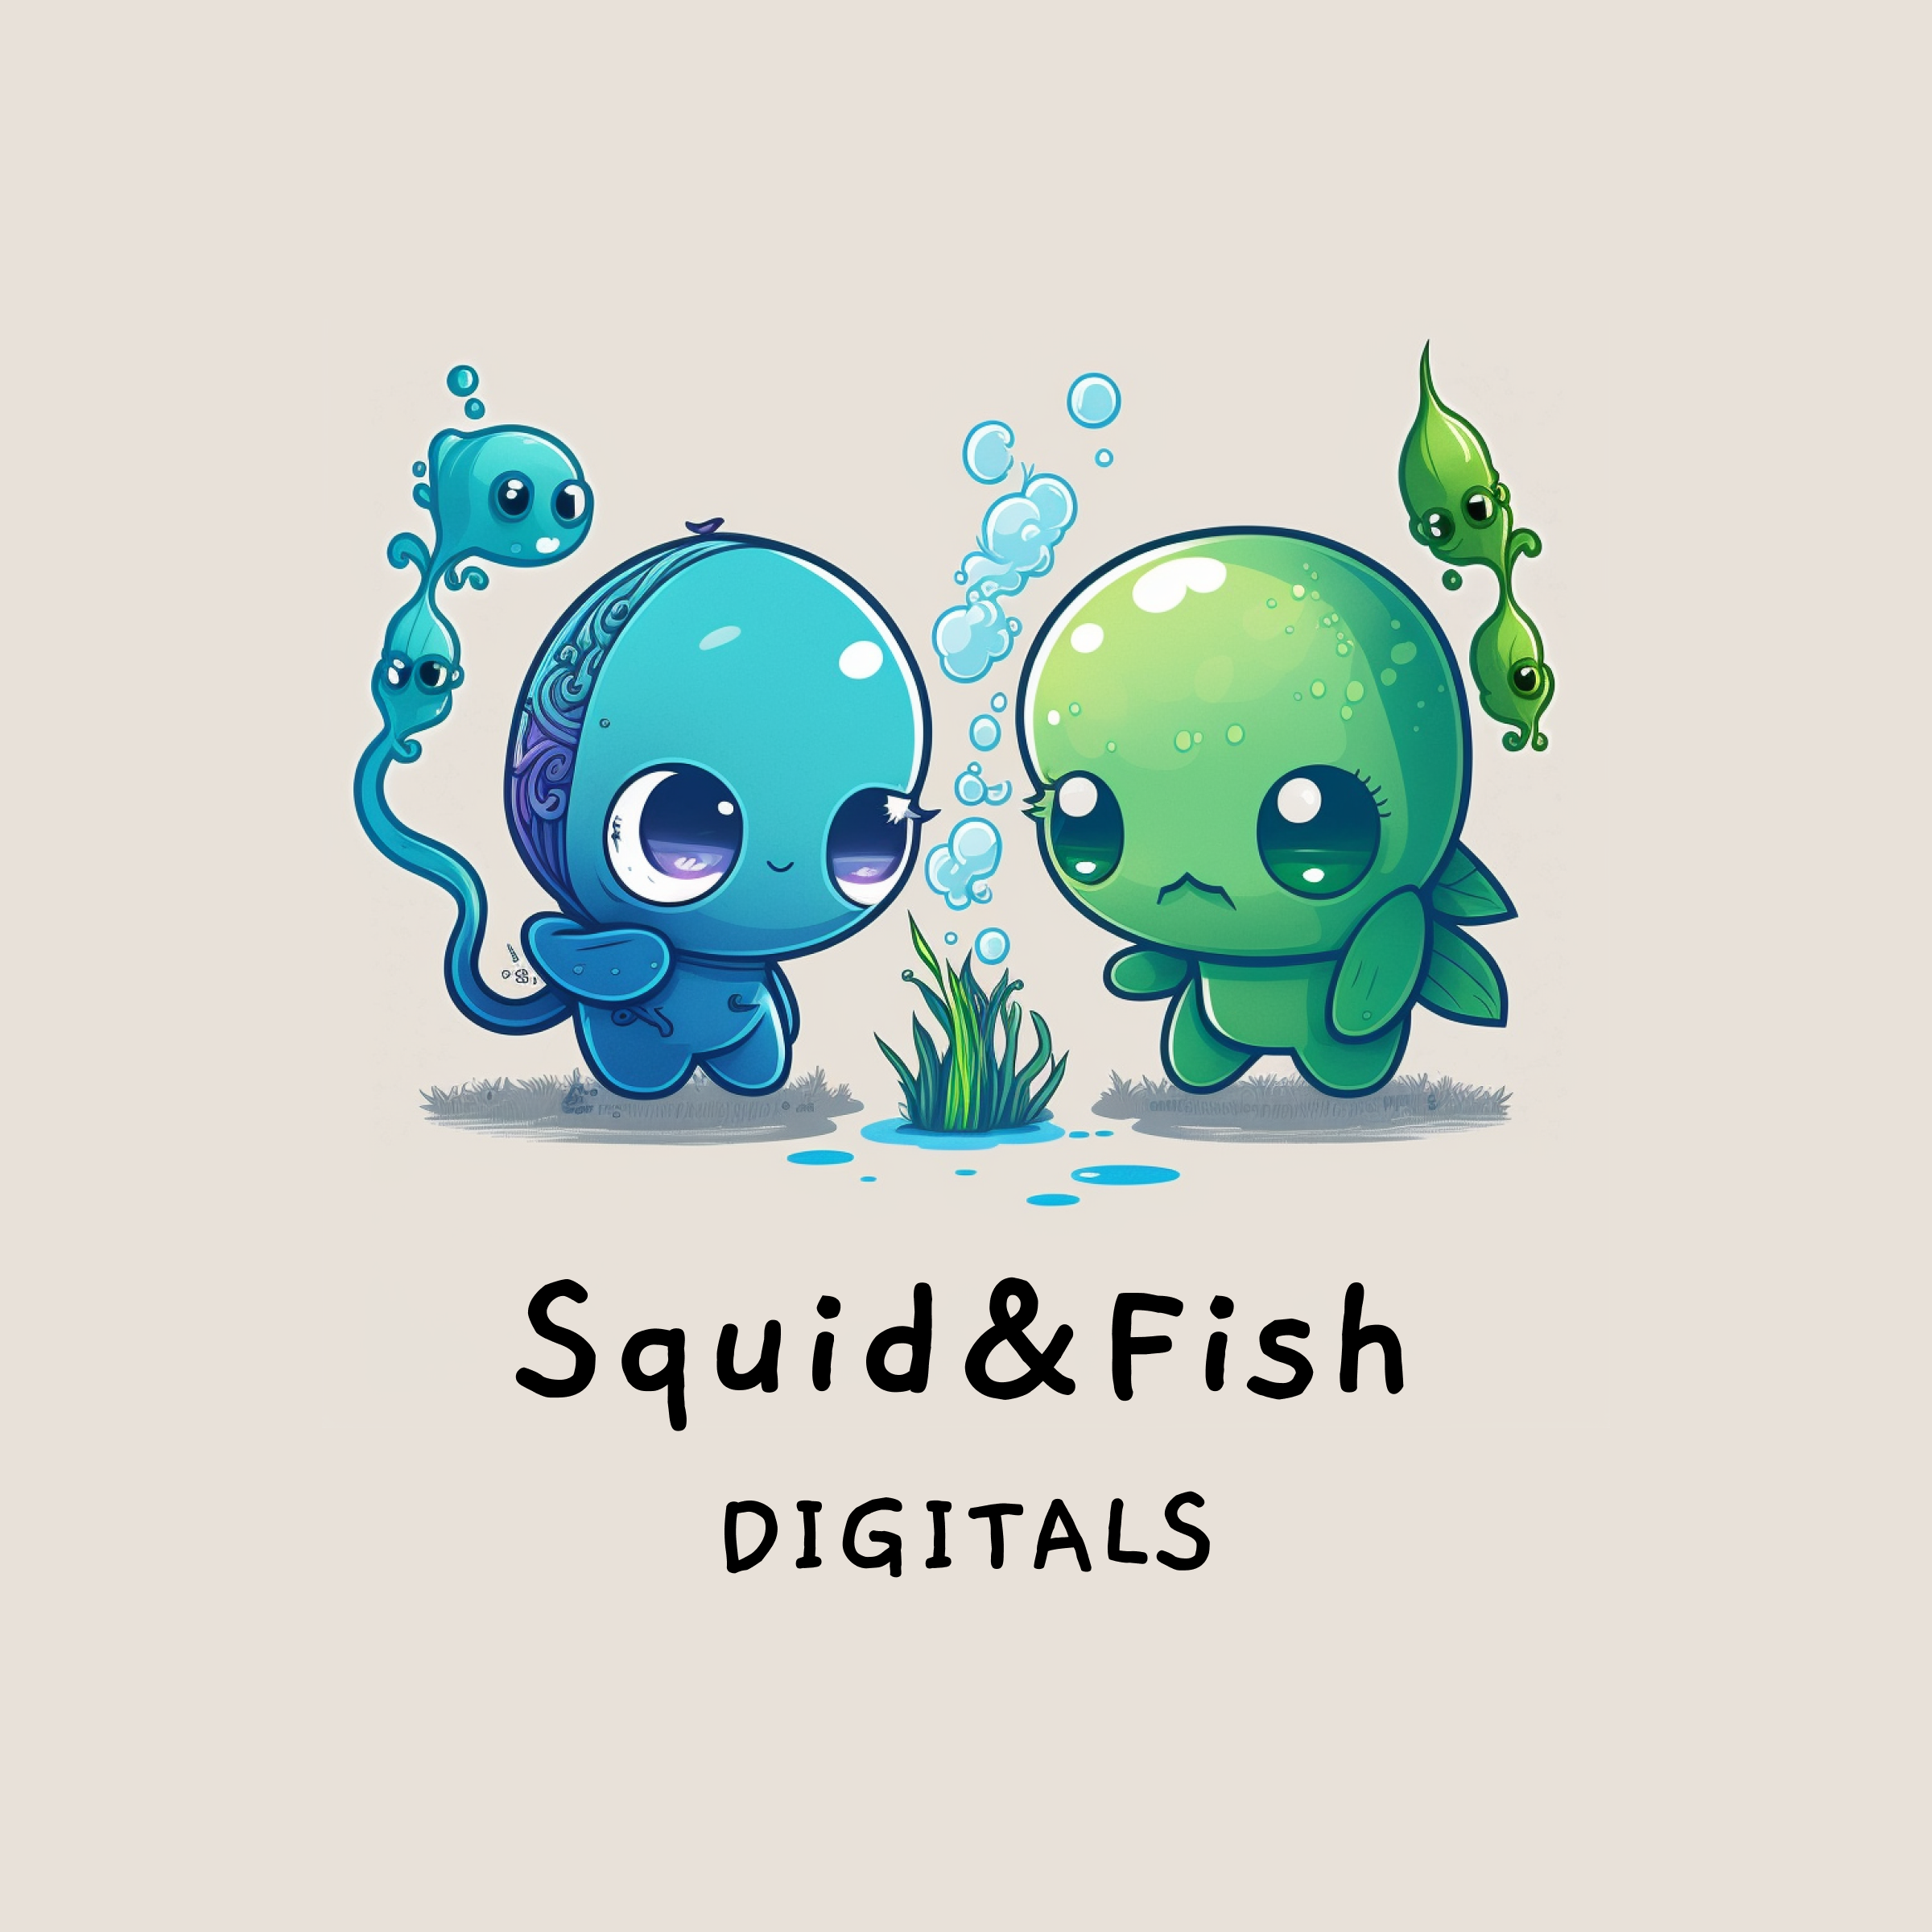 Squid & Fish